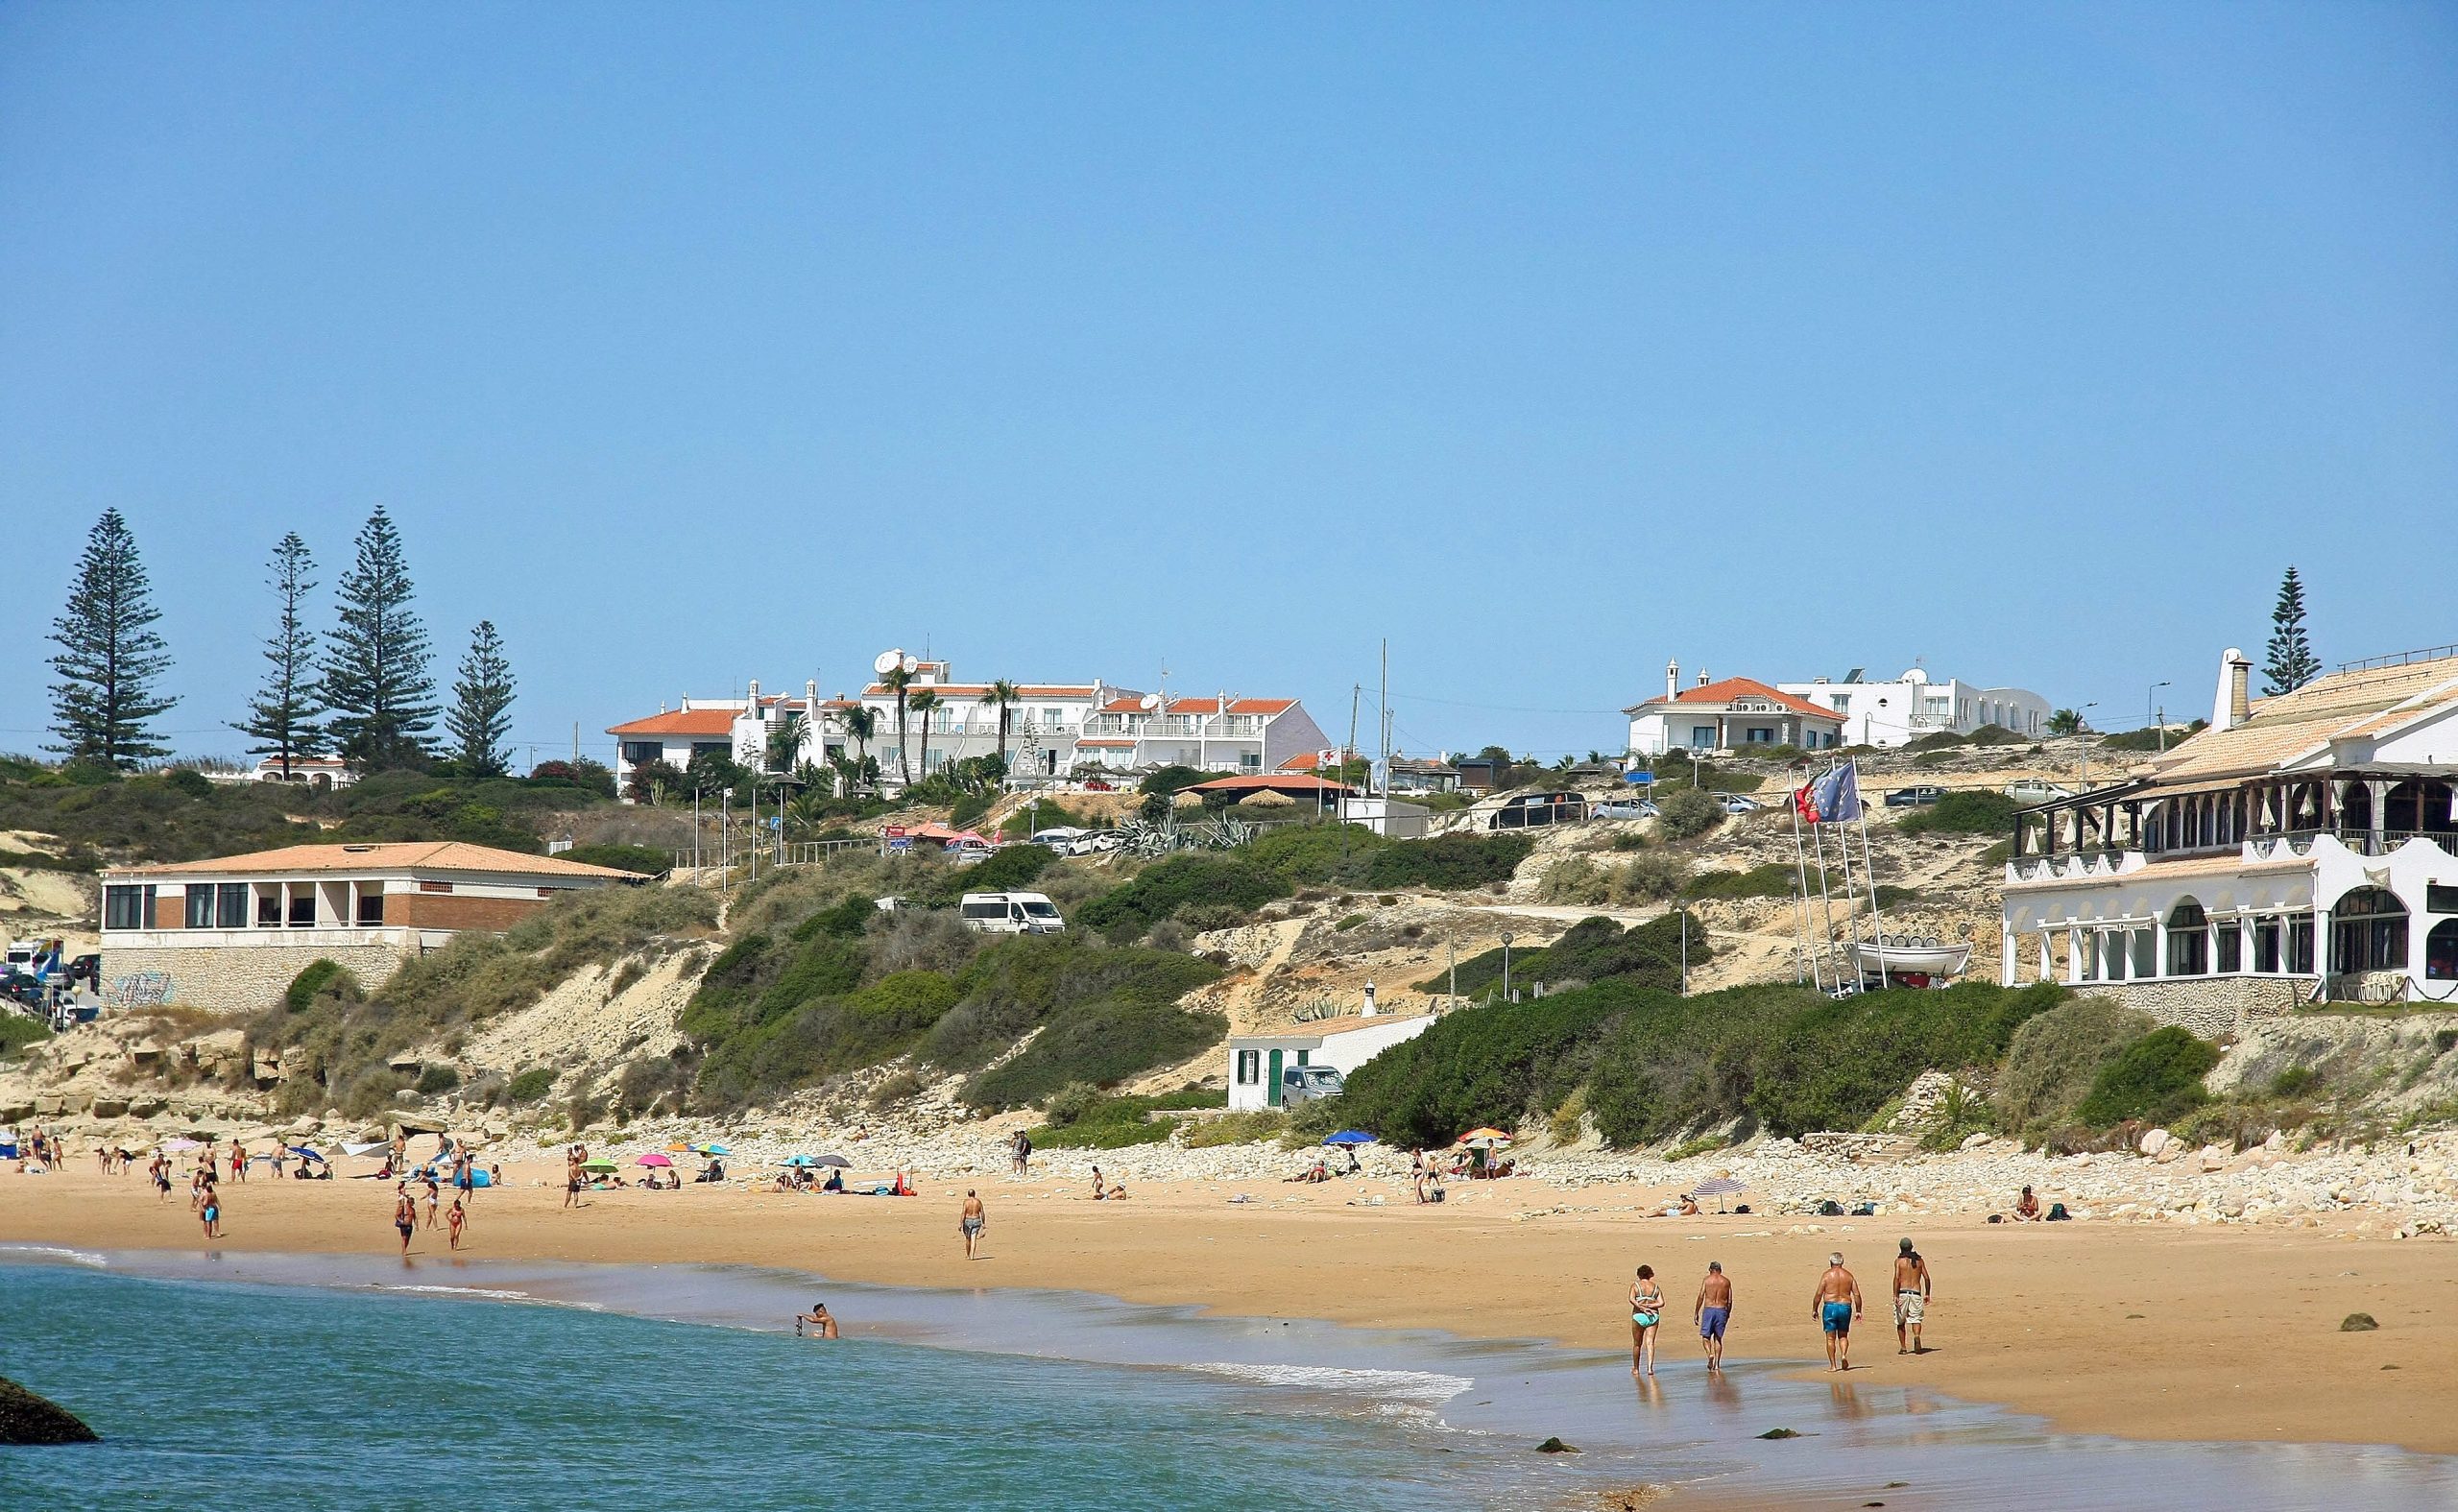 As praias de Portugal foram abertas ao público, mas é necessário respeitar regras de lotação e distanciamento